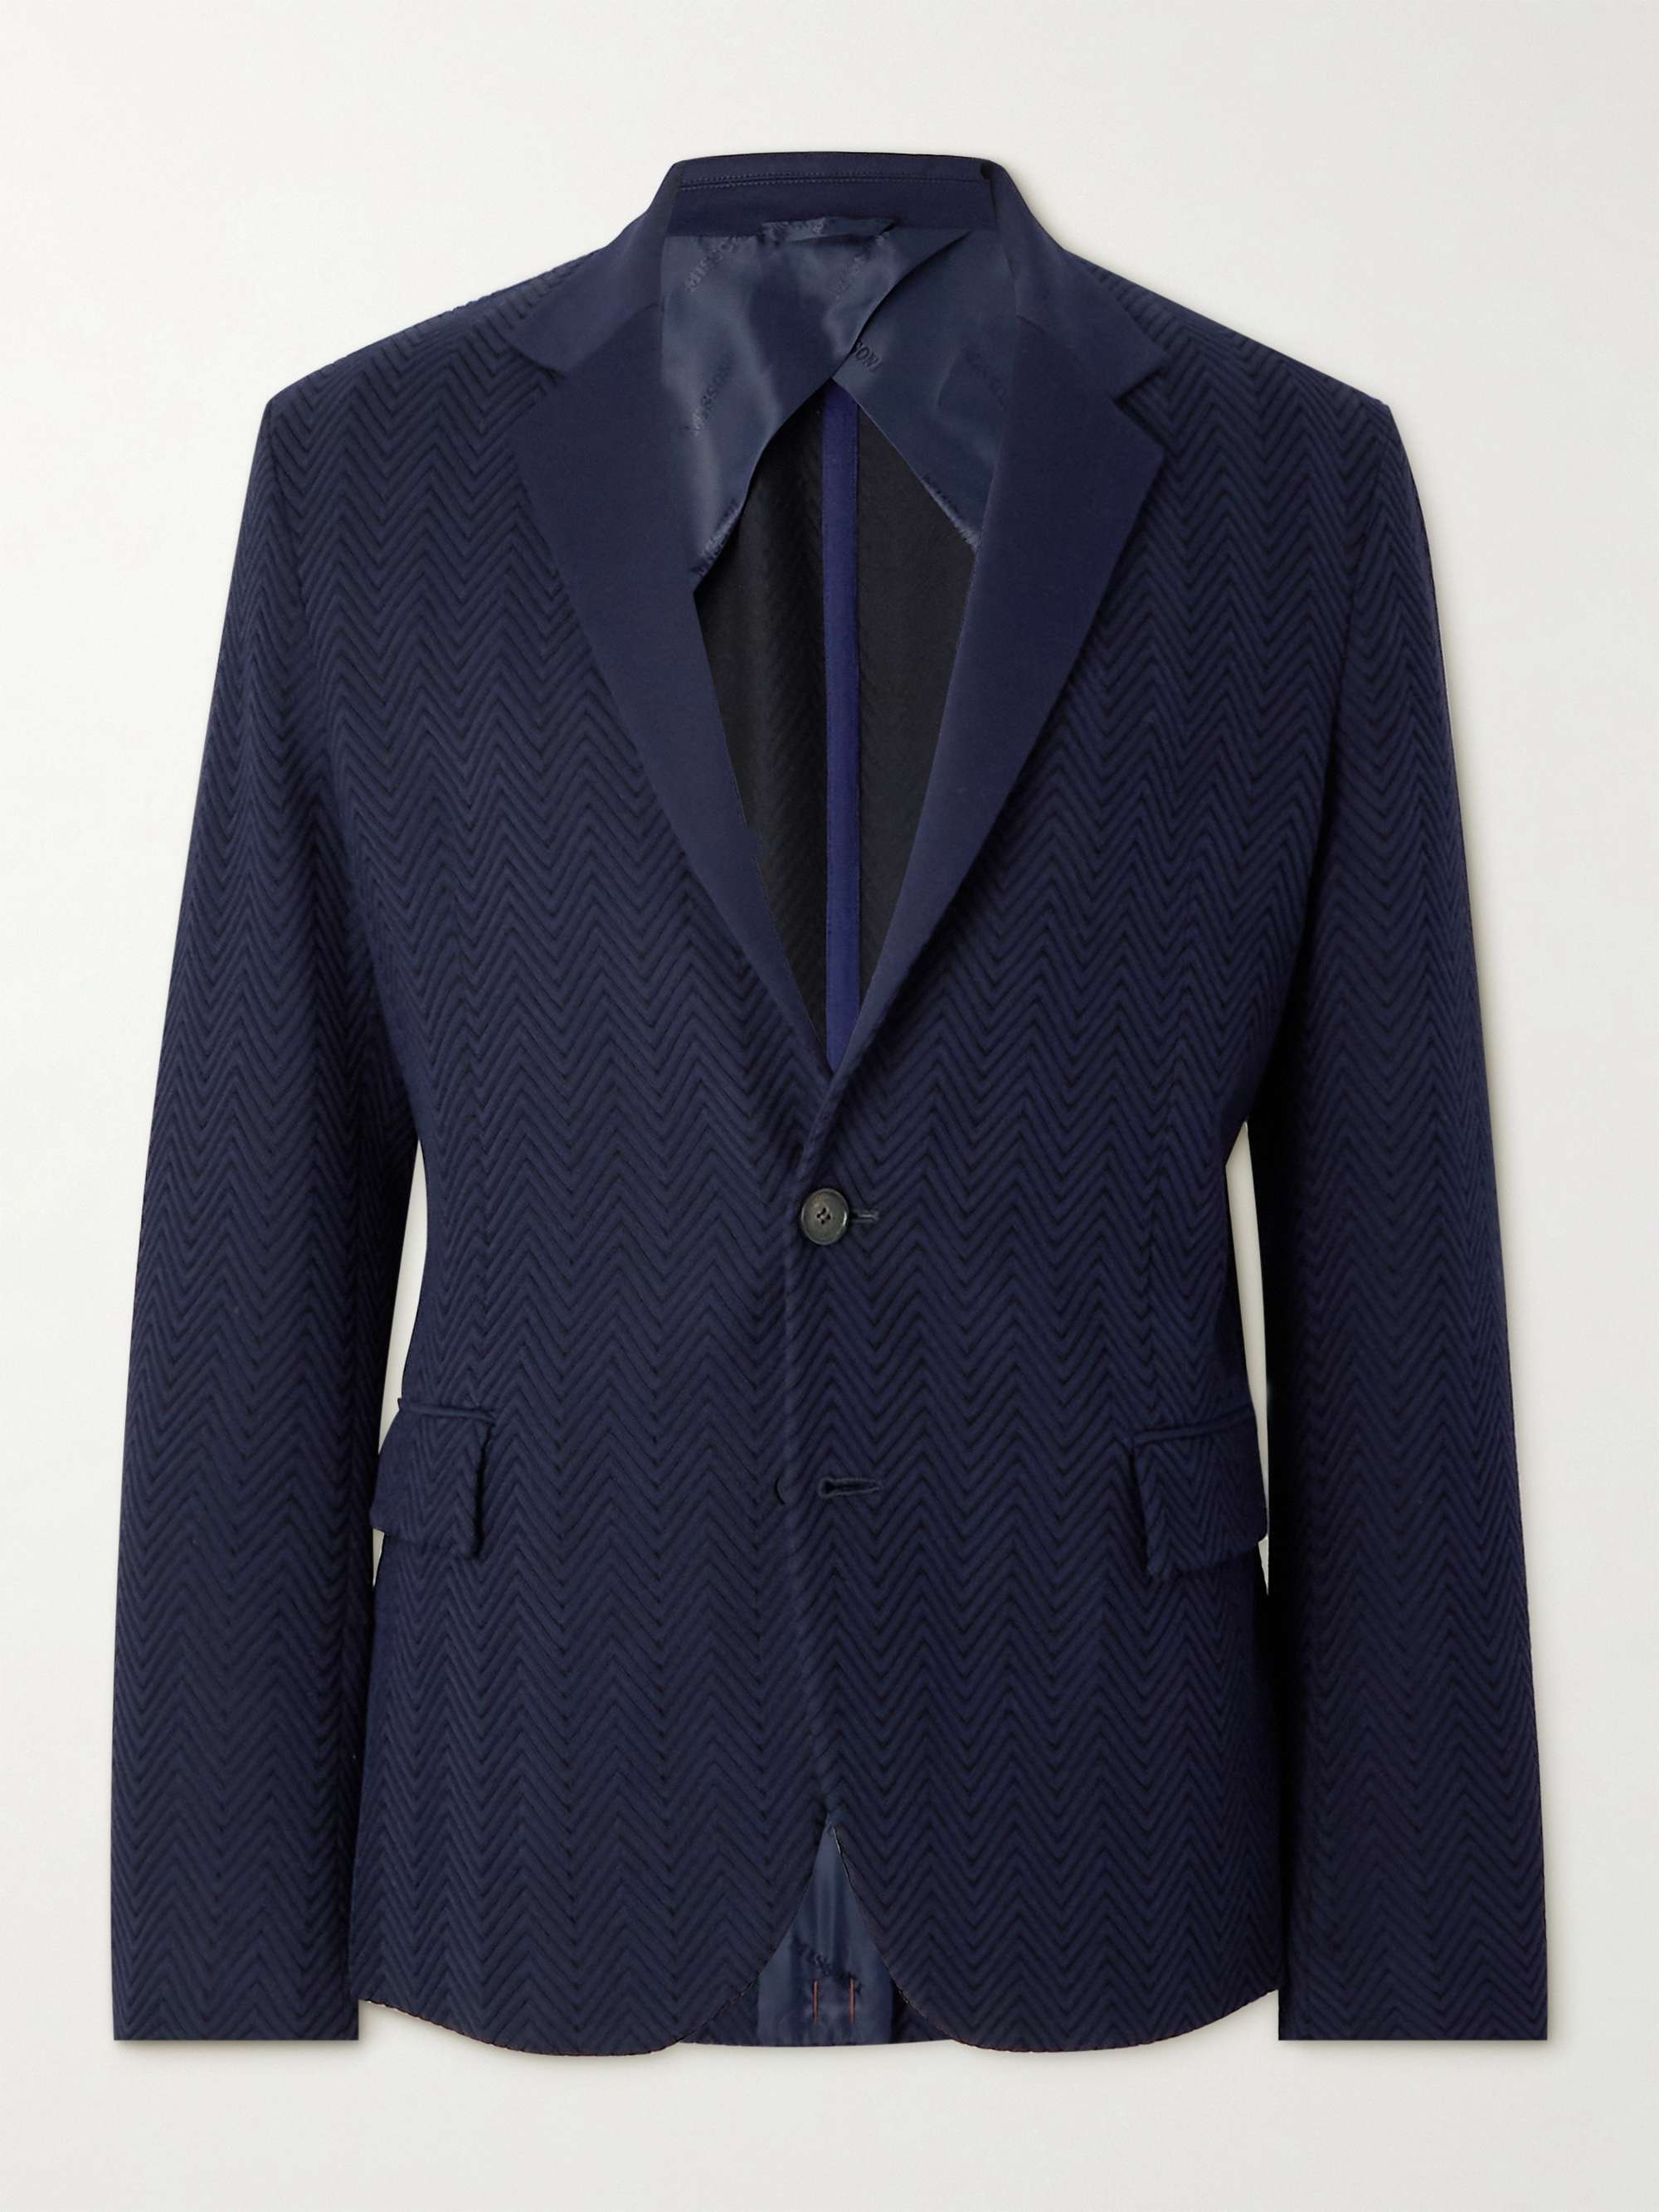 for | MR Zigzag Cotton-Blend Jacket PORTER Suit MISSONI Men Jacquard